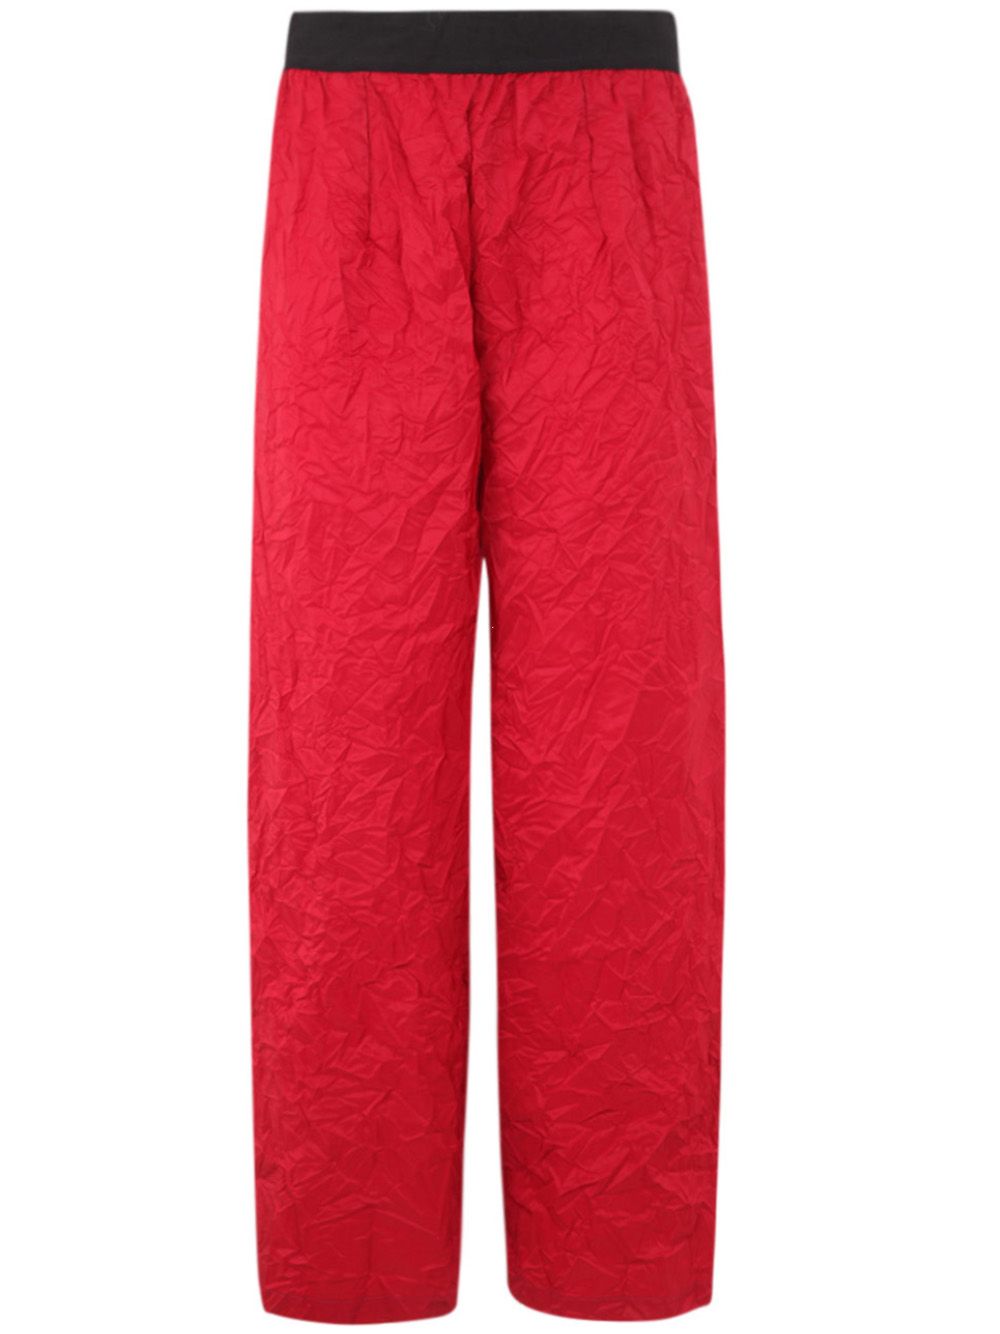 Maria Calderara Long Trousers In Red